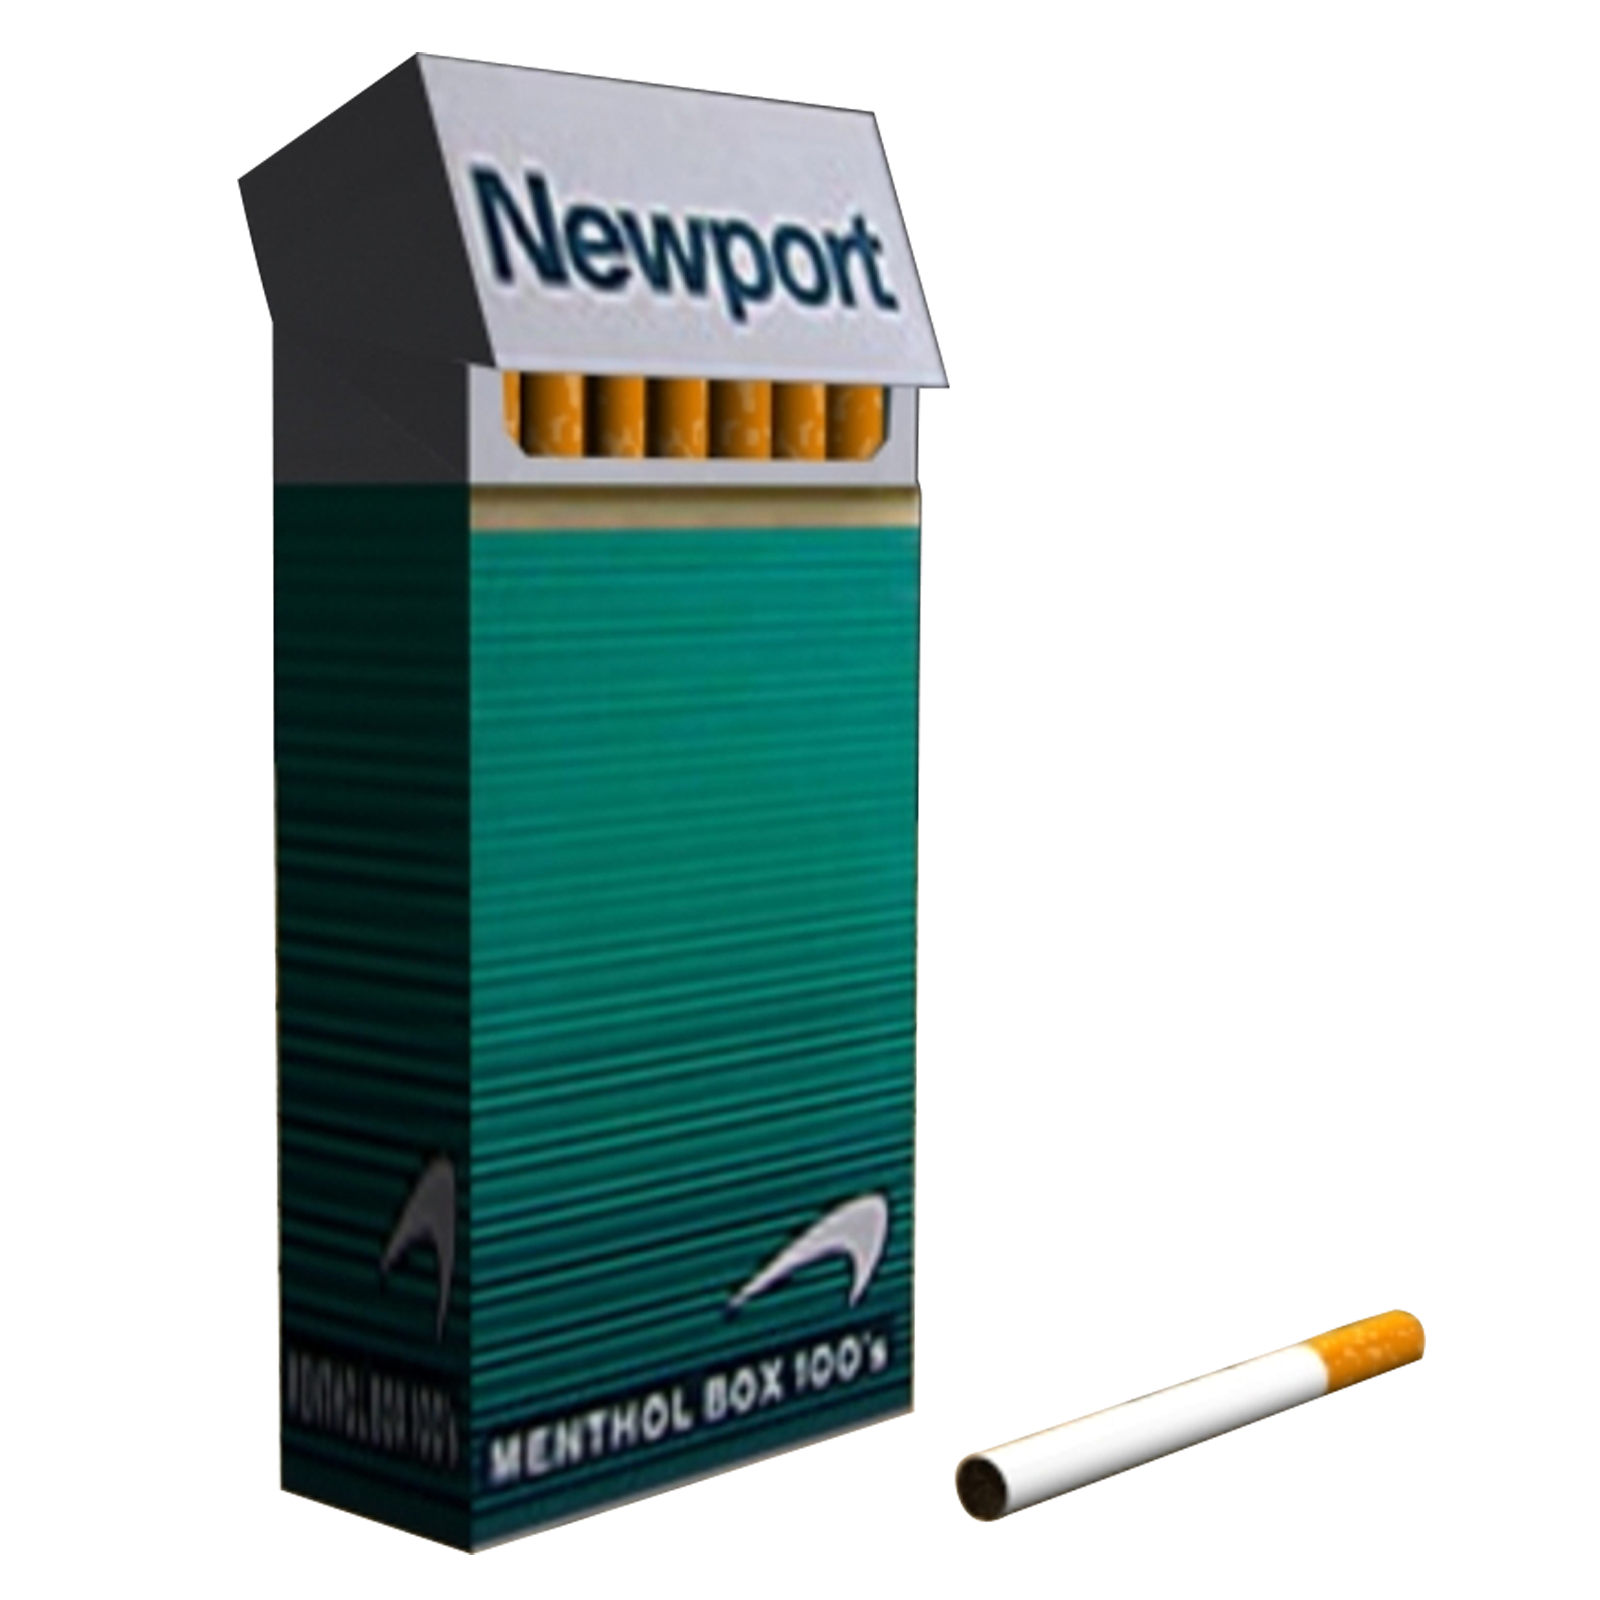 Newport Menthol 100s Cigarettes 20ct Box 1pk